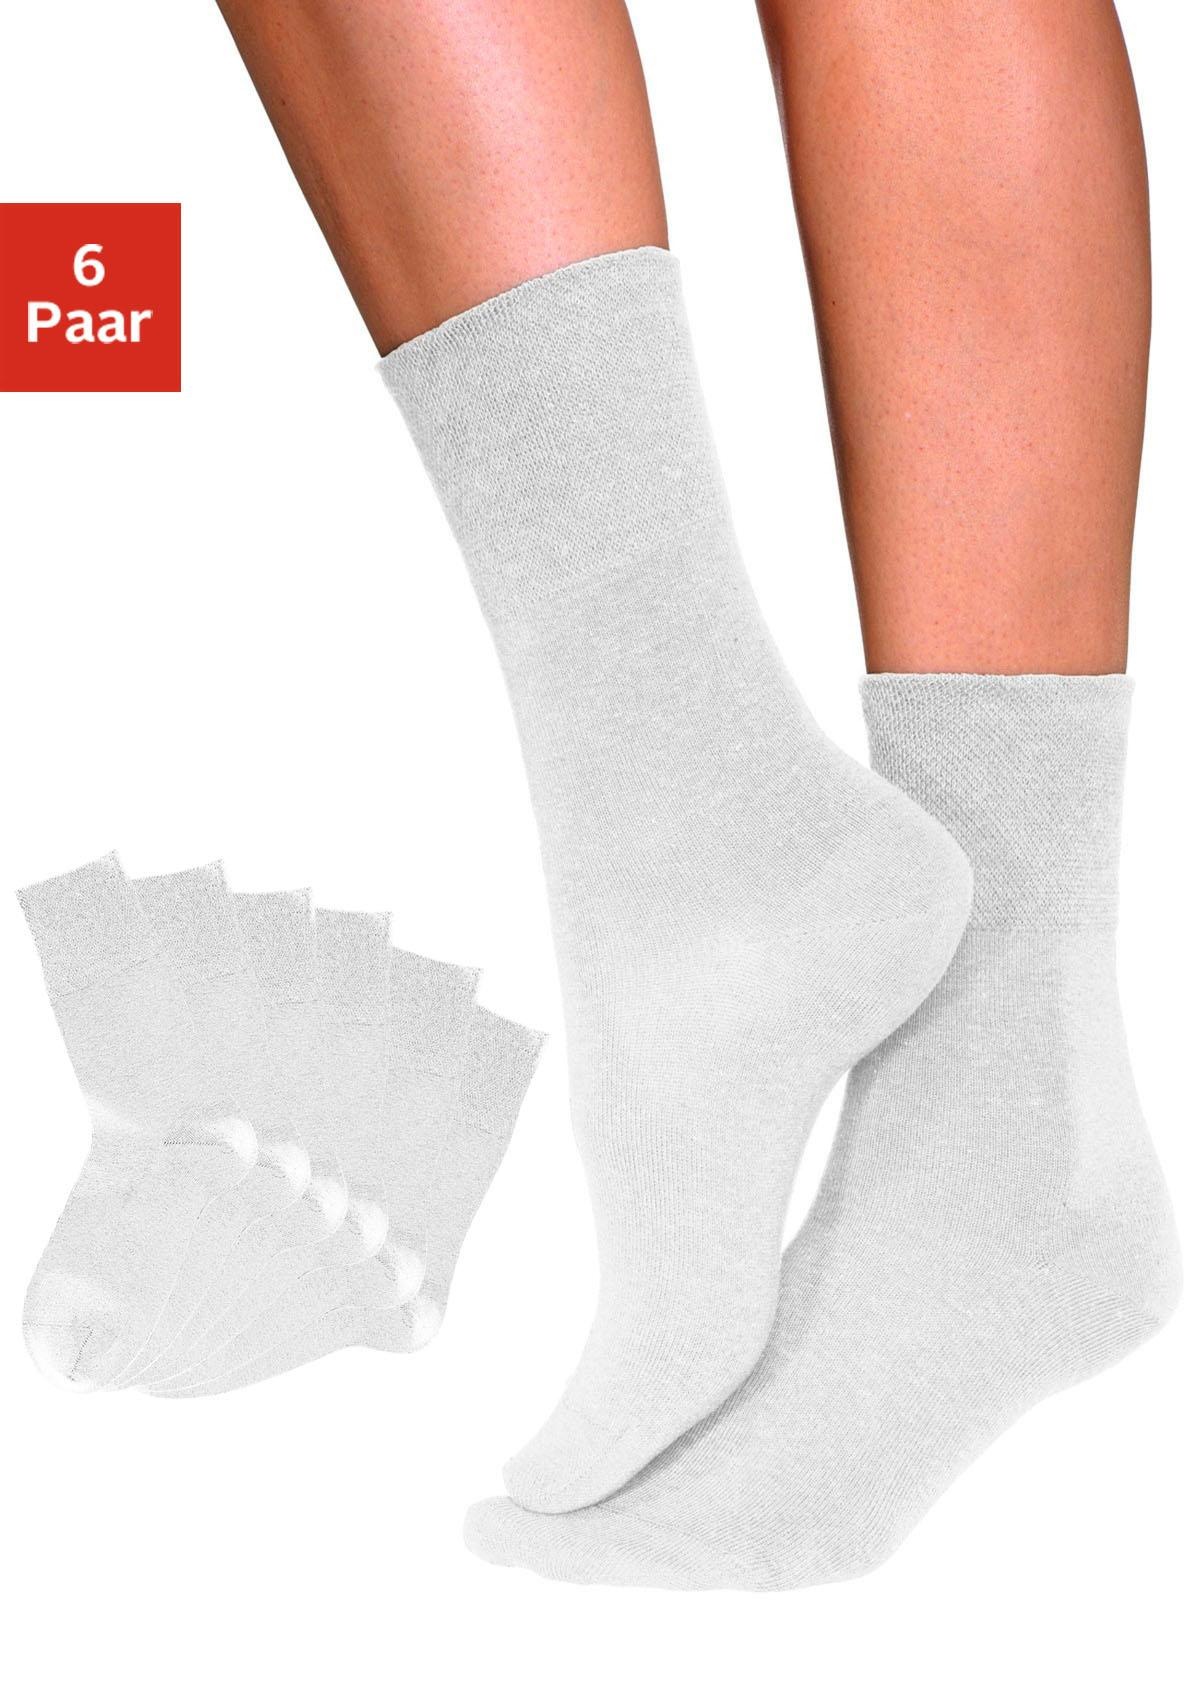 Image of H.I.S Socken, (6 Paar), mit Komfortbund auch für Diabetiker geeignet